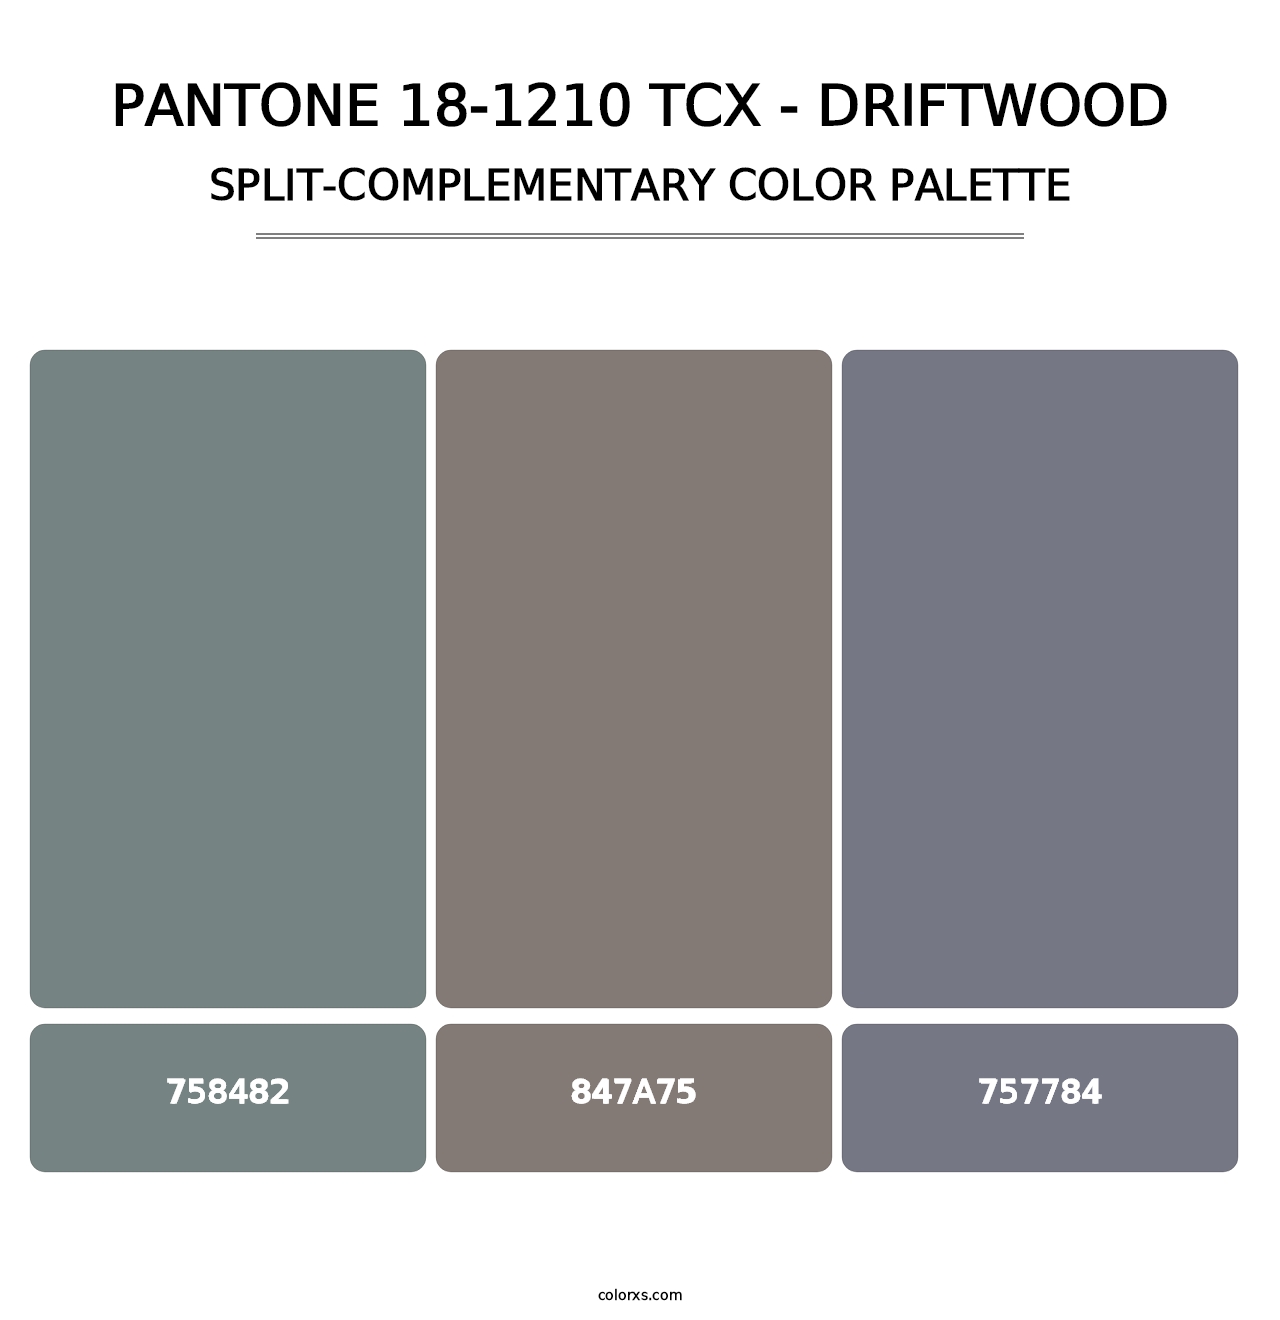 PANTONE 18-1210 TCX - Driftwood - Split-Complementary Color Palette